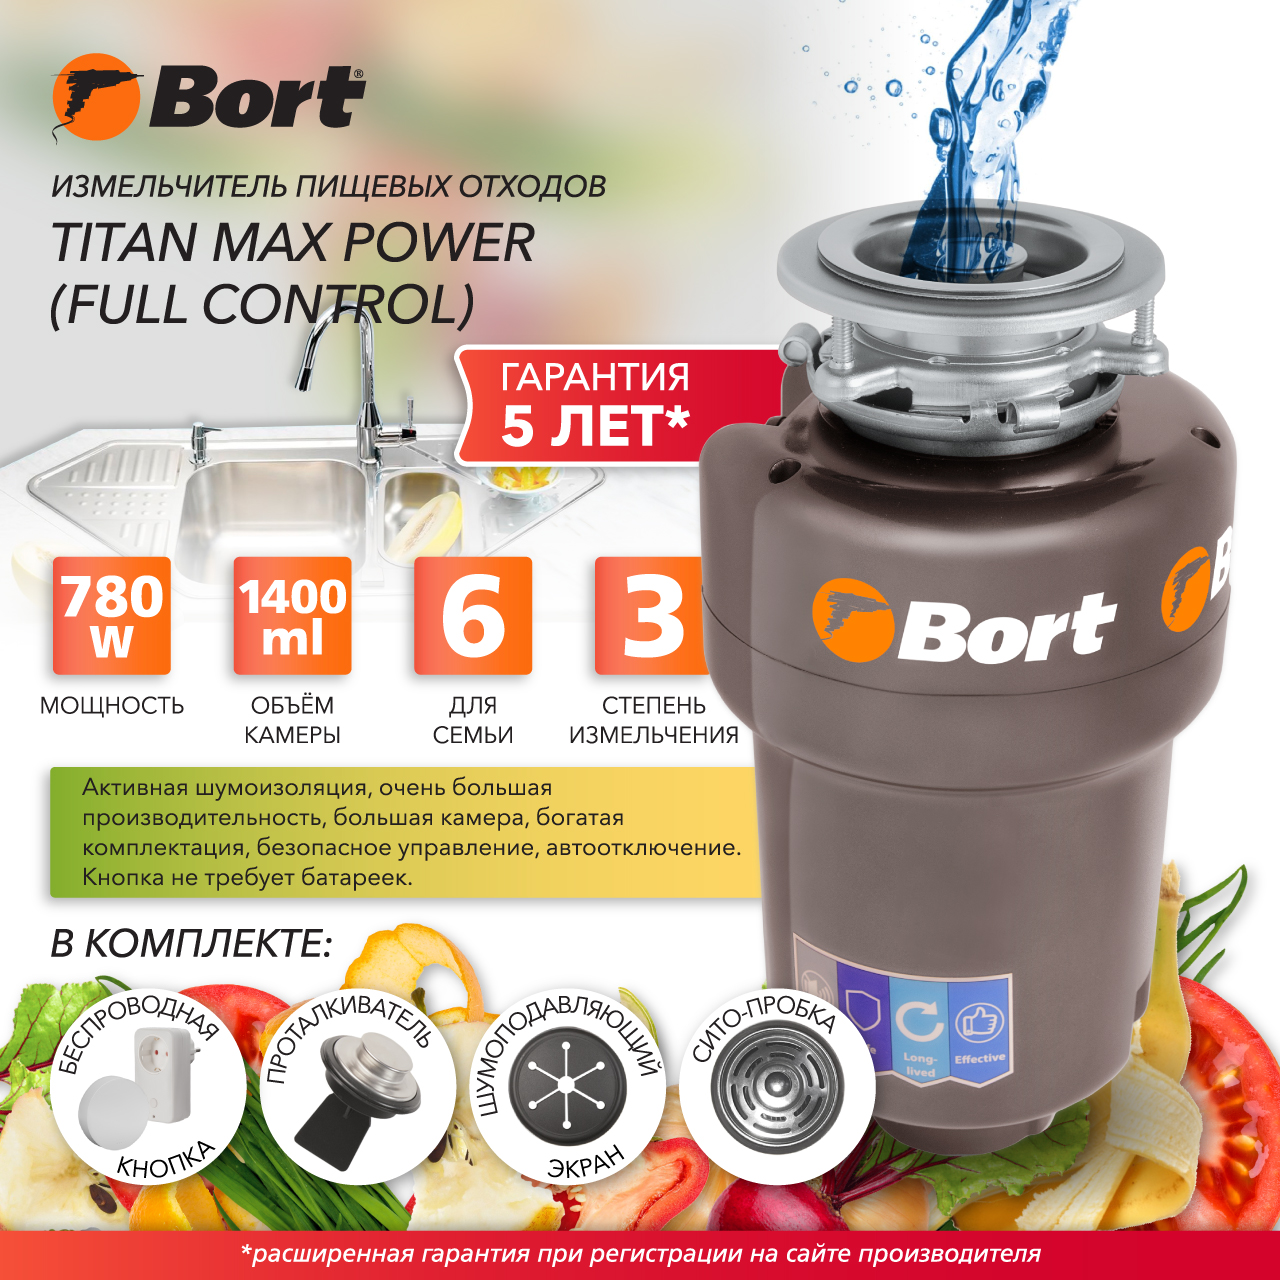 Измельчитель пищевых отходов Bort TITAN MAX POWER FULLCONTROL (93410266) серебристый измельчитель пищевых отходов franke turbo elite te 50 134 0535 229 красный